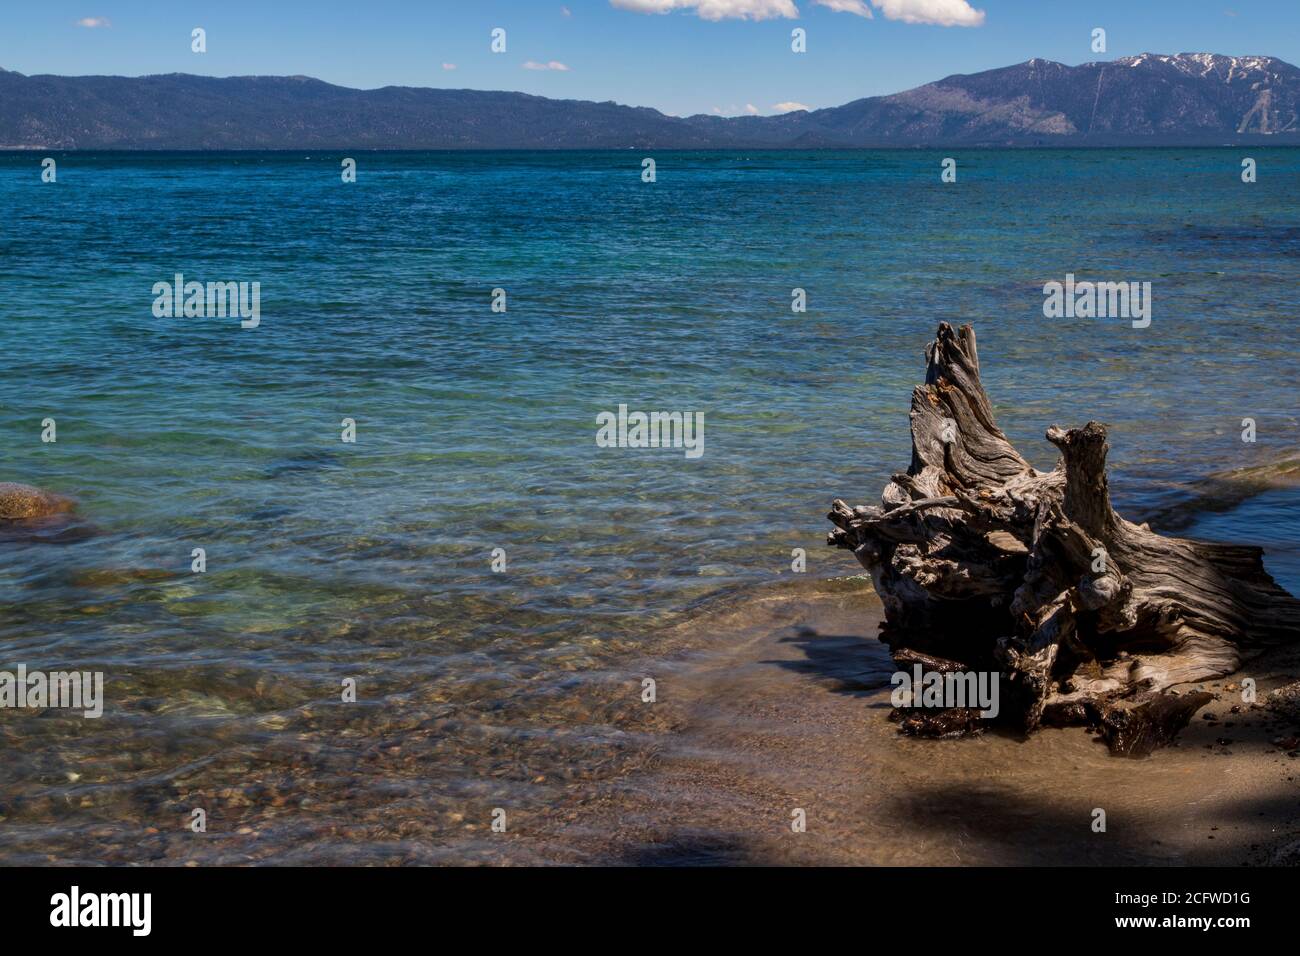 Blick auf Lake Tahoe vom Sugarpine State Park, CA, Treibholz und Strand im Vordergrund, wunderschöne blaue Schattierungen des Wassers; Berge und Skipisten im Hintergrund Stockfoto